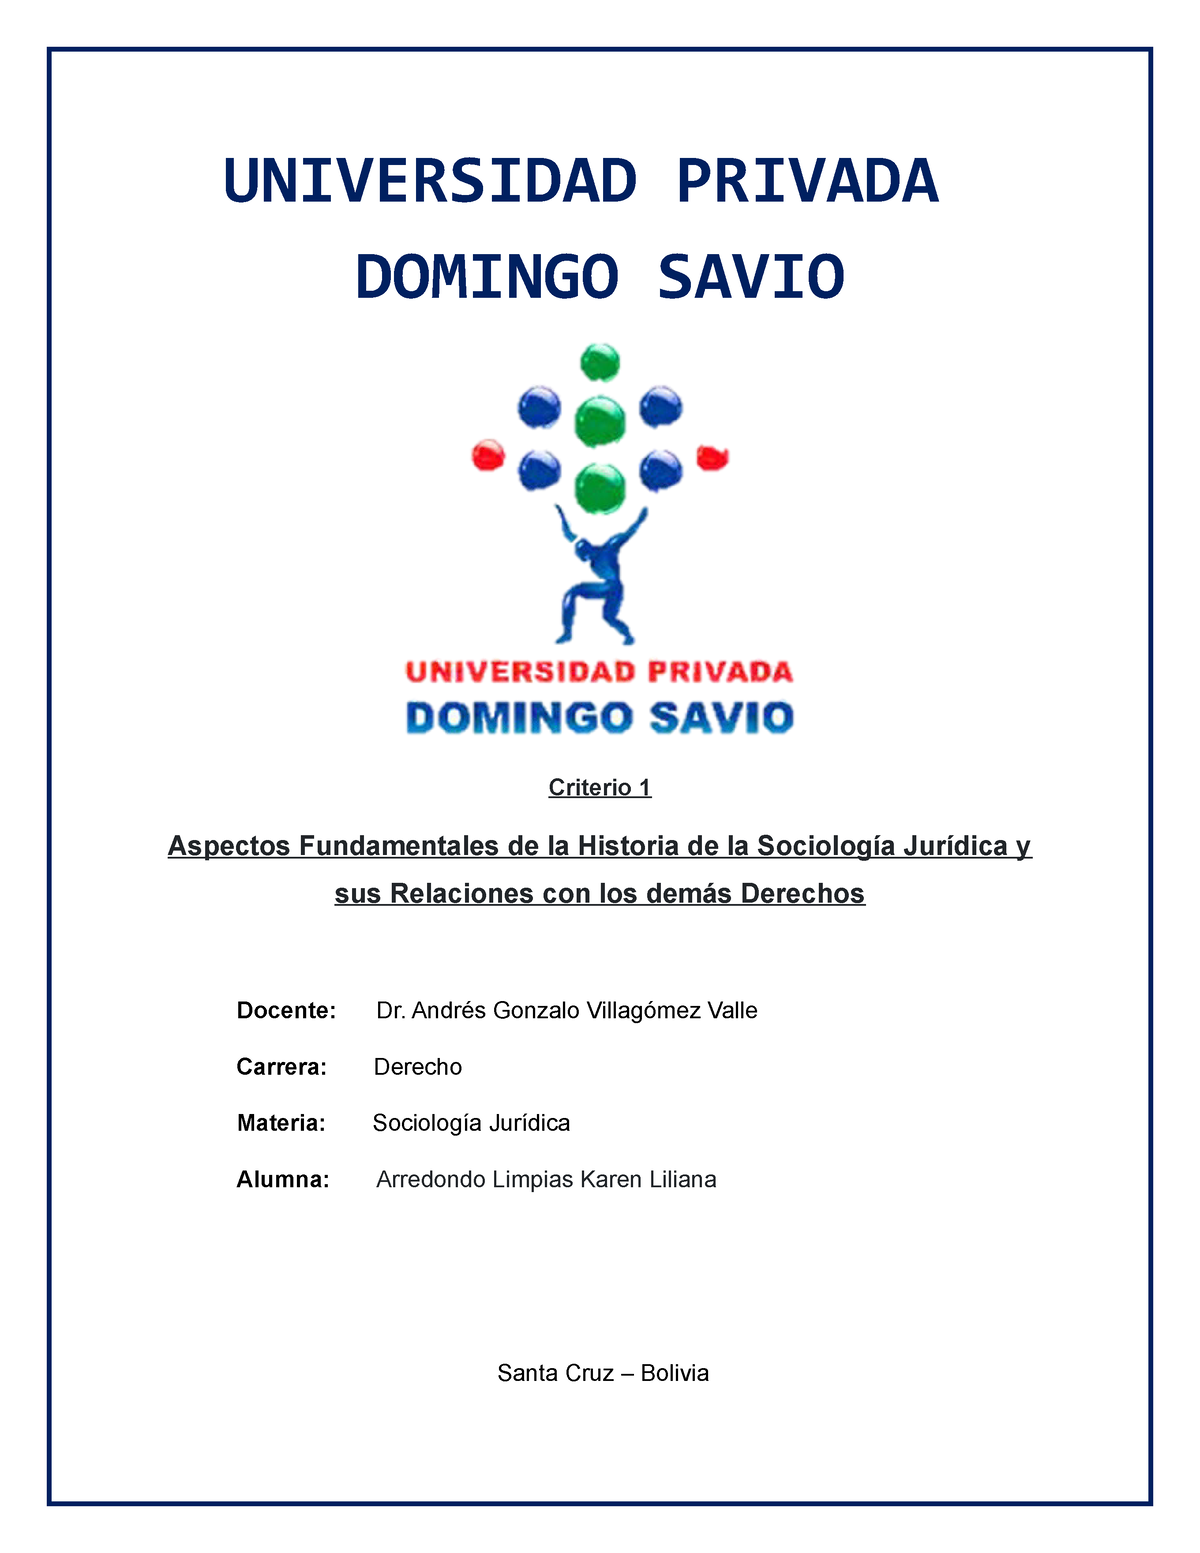 Criterio 1 Sociologia Juridica - UNIVERSIDAD PRIVADA DOMINGO SAVIO Criterio  1 Aspectos Fundamentales - Studocu